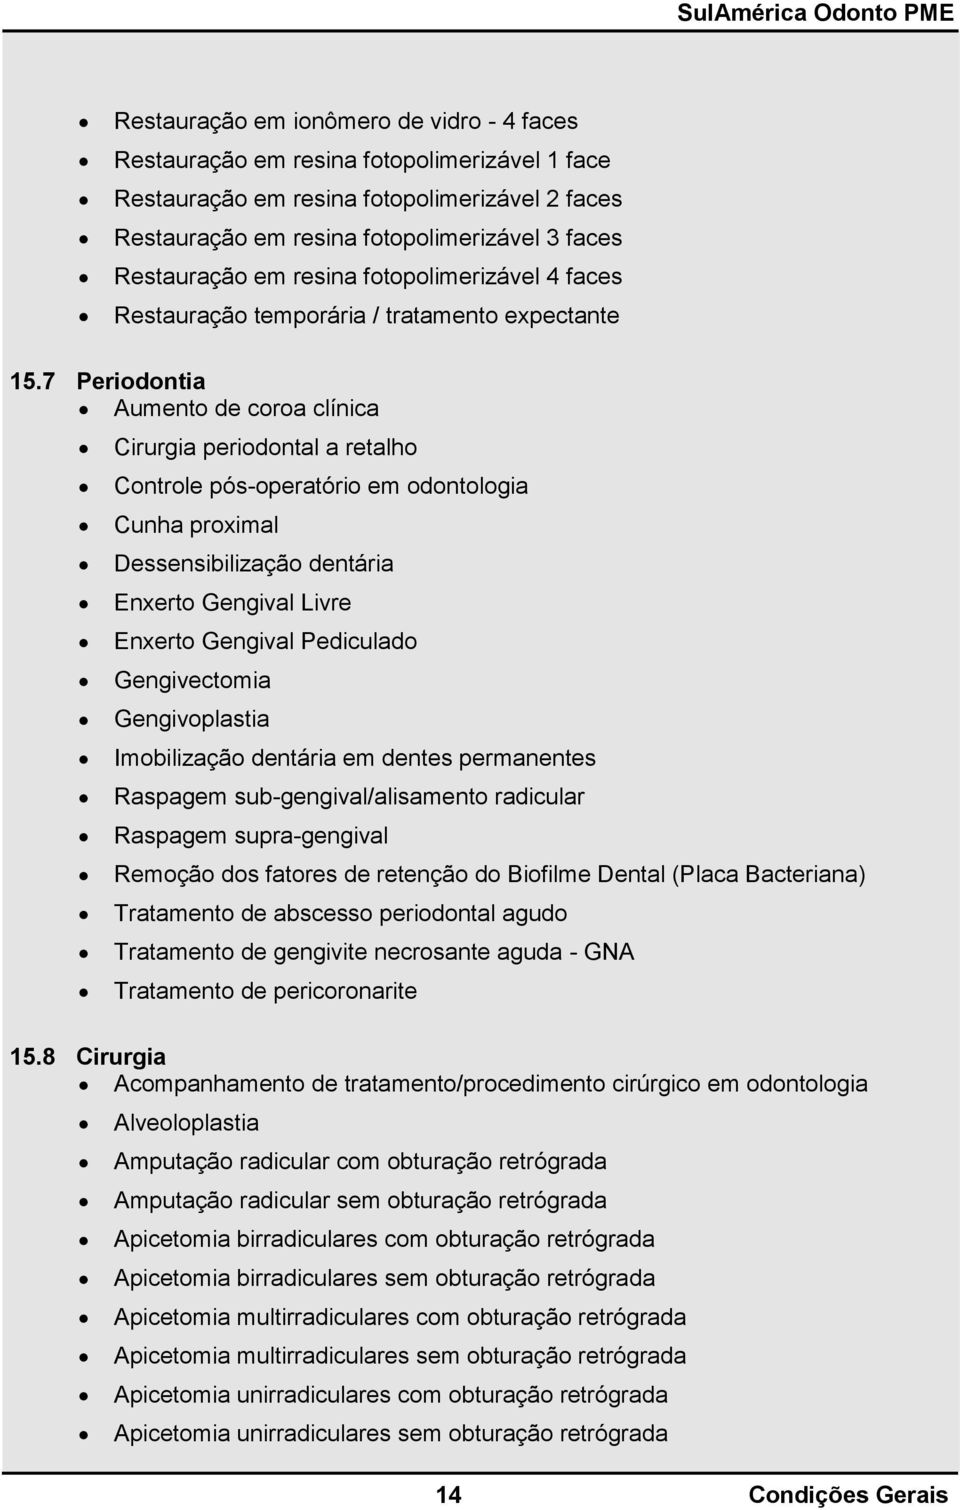 7 Periodontia Aumento de coroa clínica Cirurgia periodontal a retalho Controle pós-operatório em odontologia Cunha proximal Dessensibilização dentária Enxerto Gengival Livre Enxerto Gengival